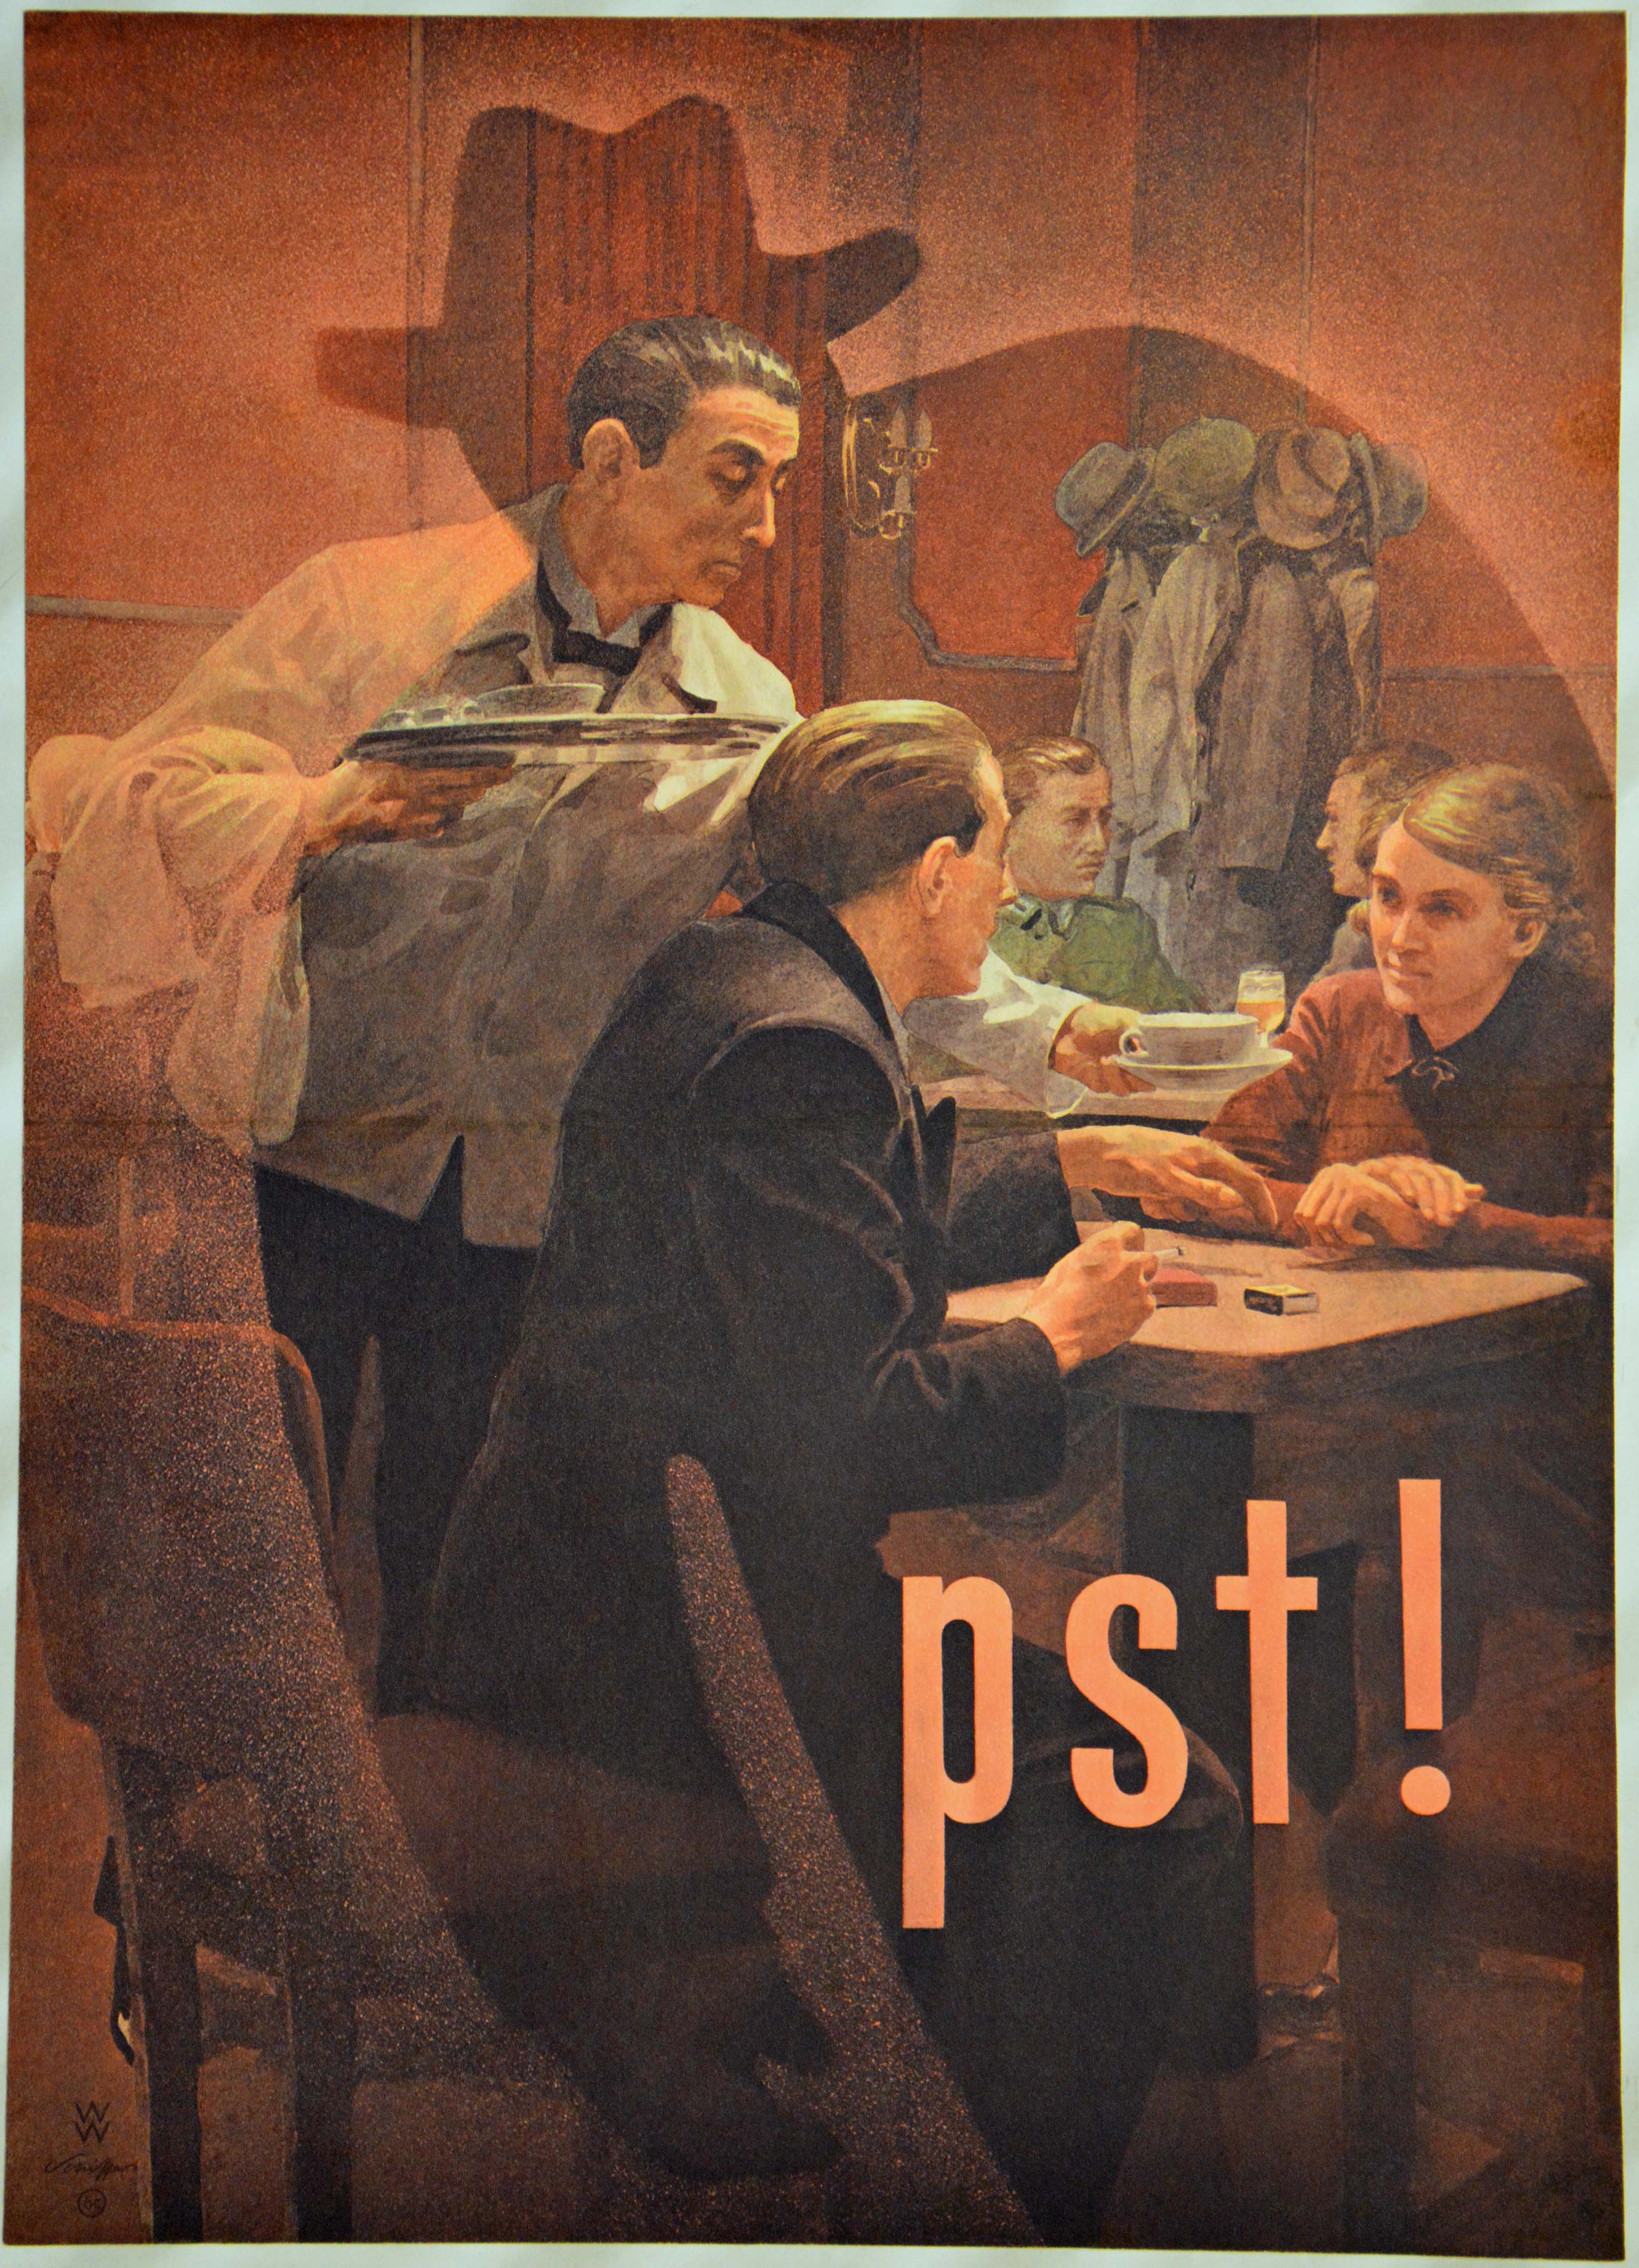 Propagandaplakat der Anti-Spionage Kampagne 'Feind hört mit!', 1944